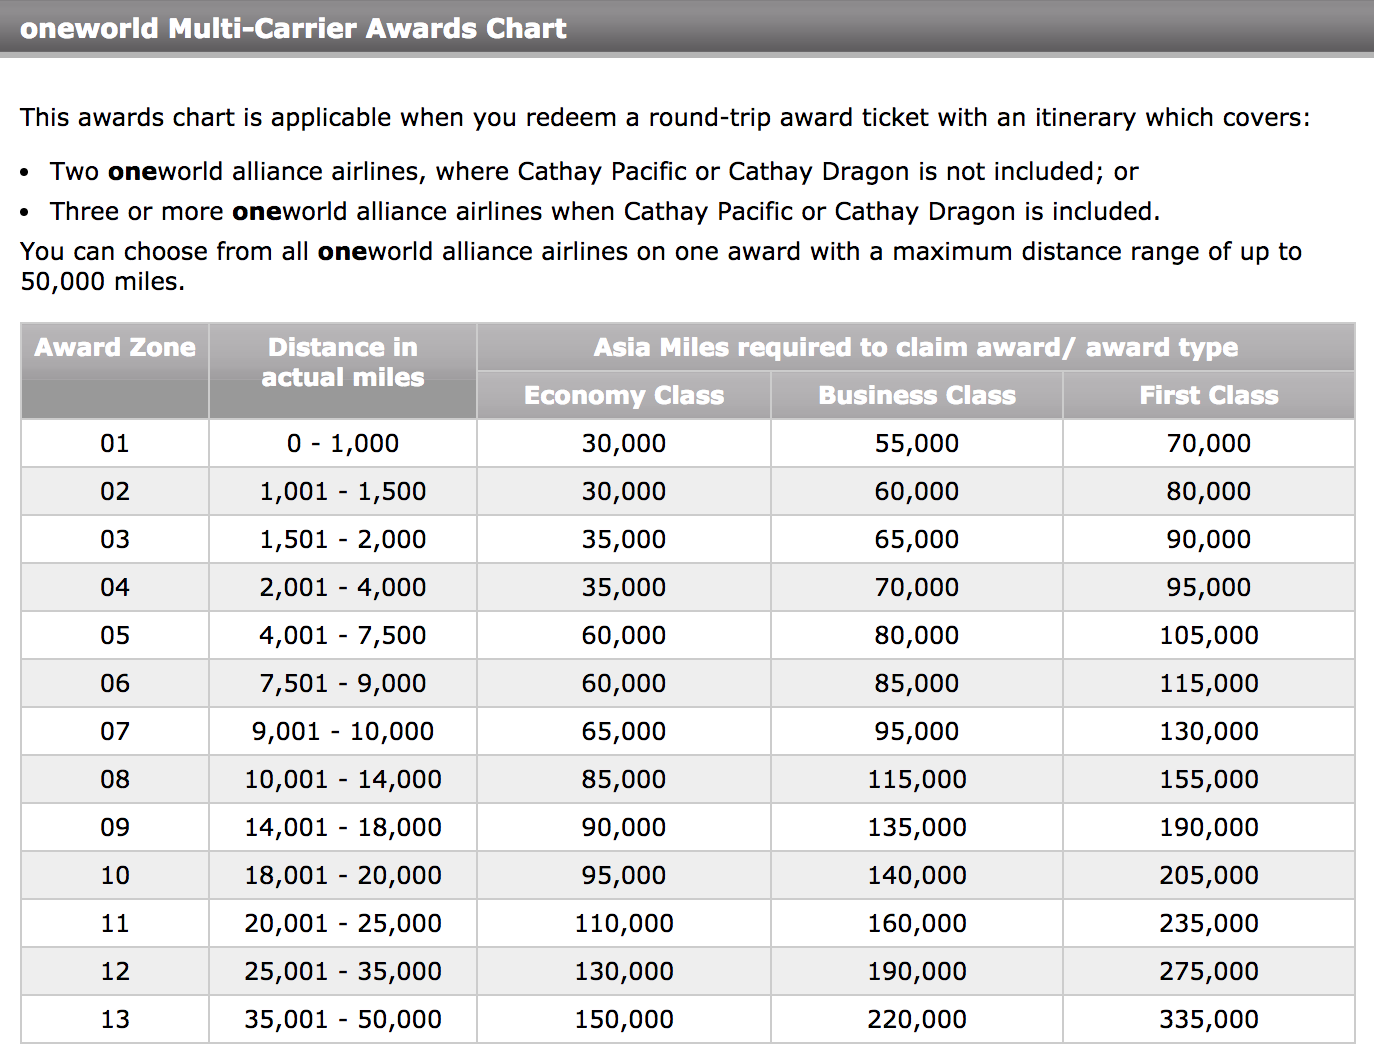 Cathay Pacific Award Chart